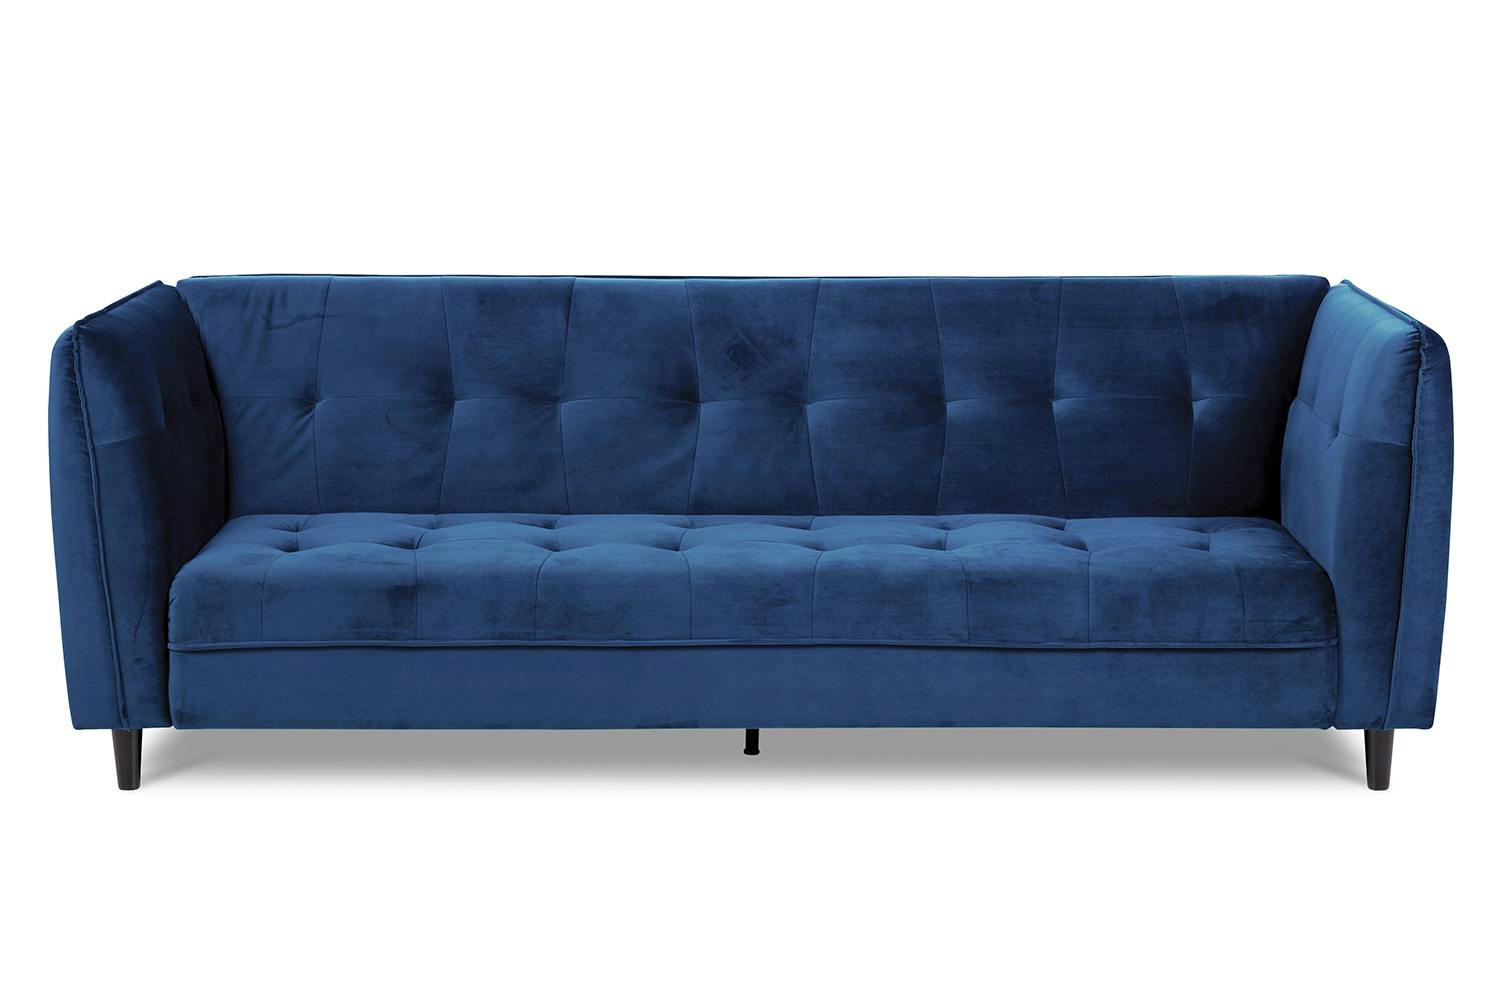 Misha Jumbo Sofa Bed Blue Ireland